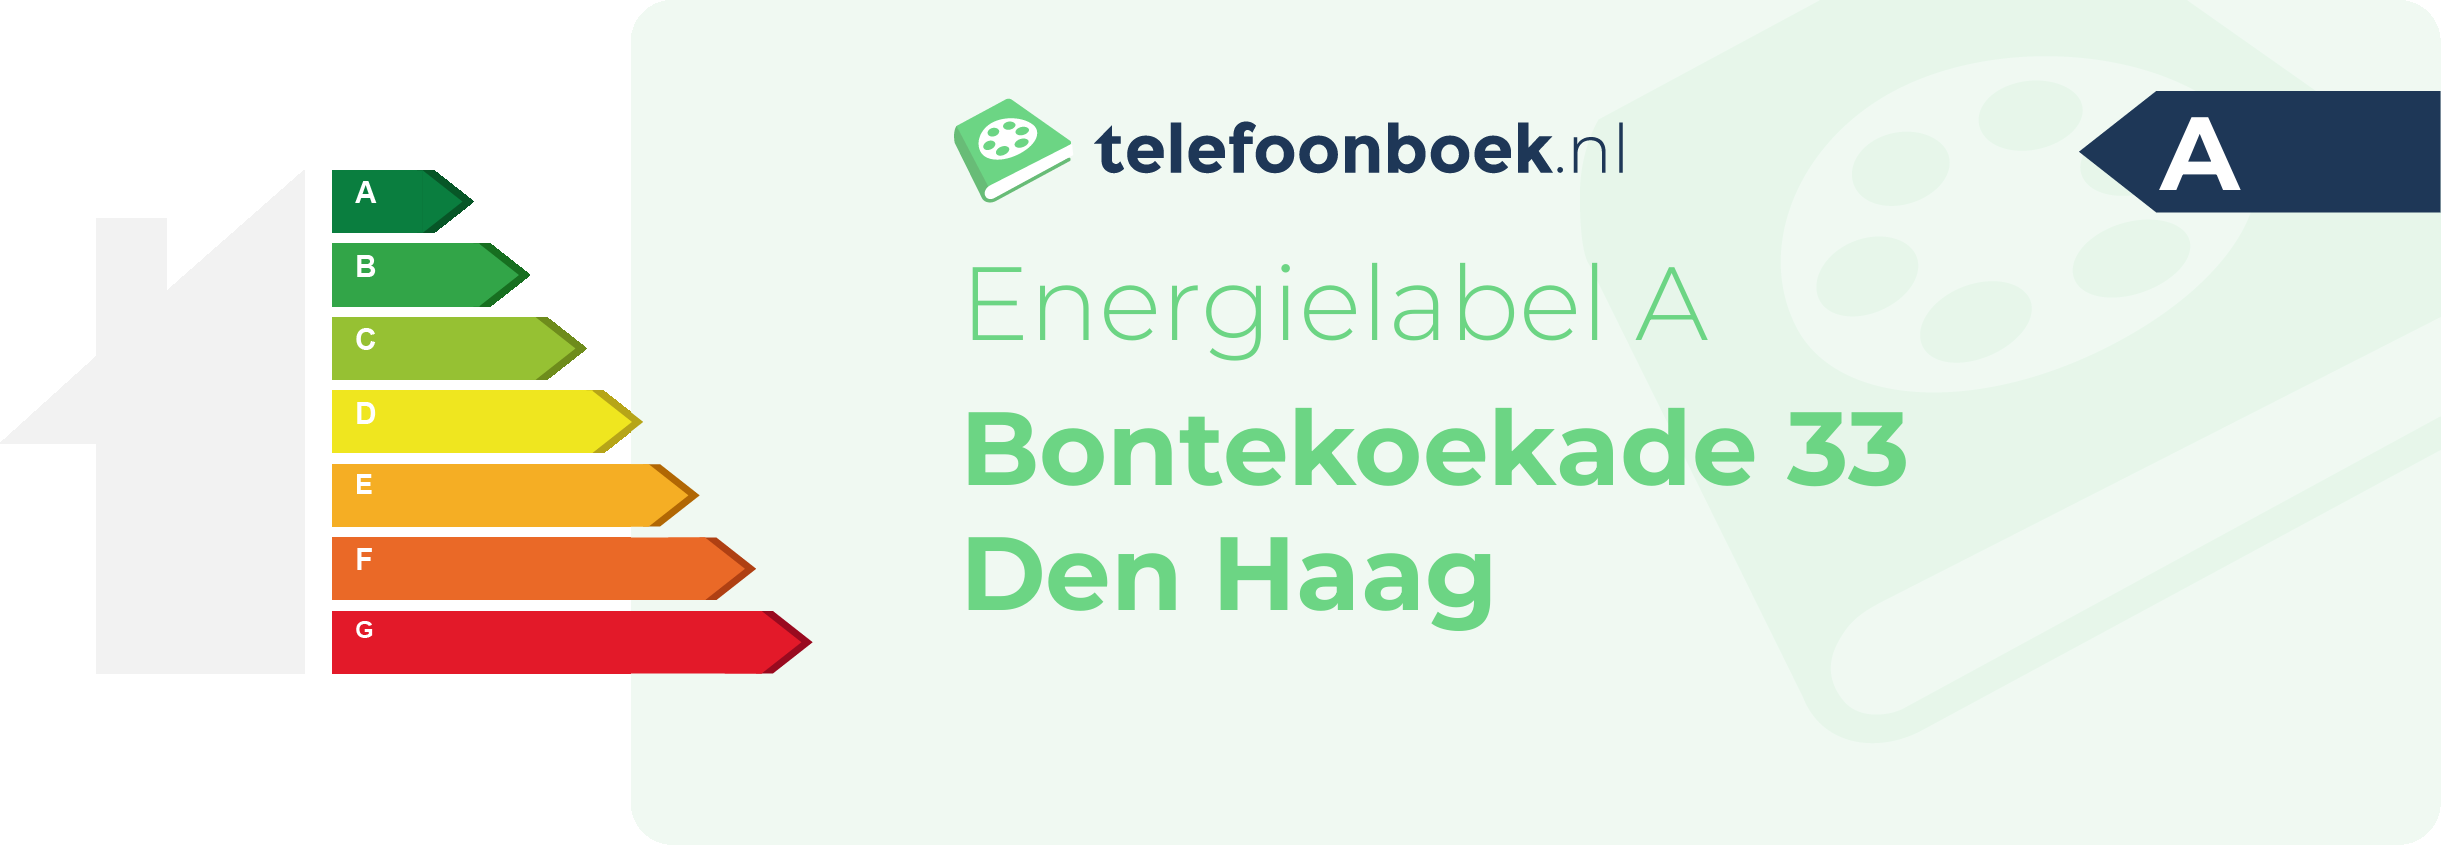 Energielabel Bontekoekade 33 Den Haag